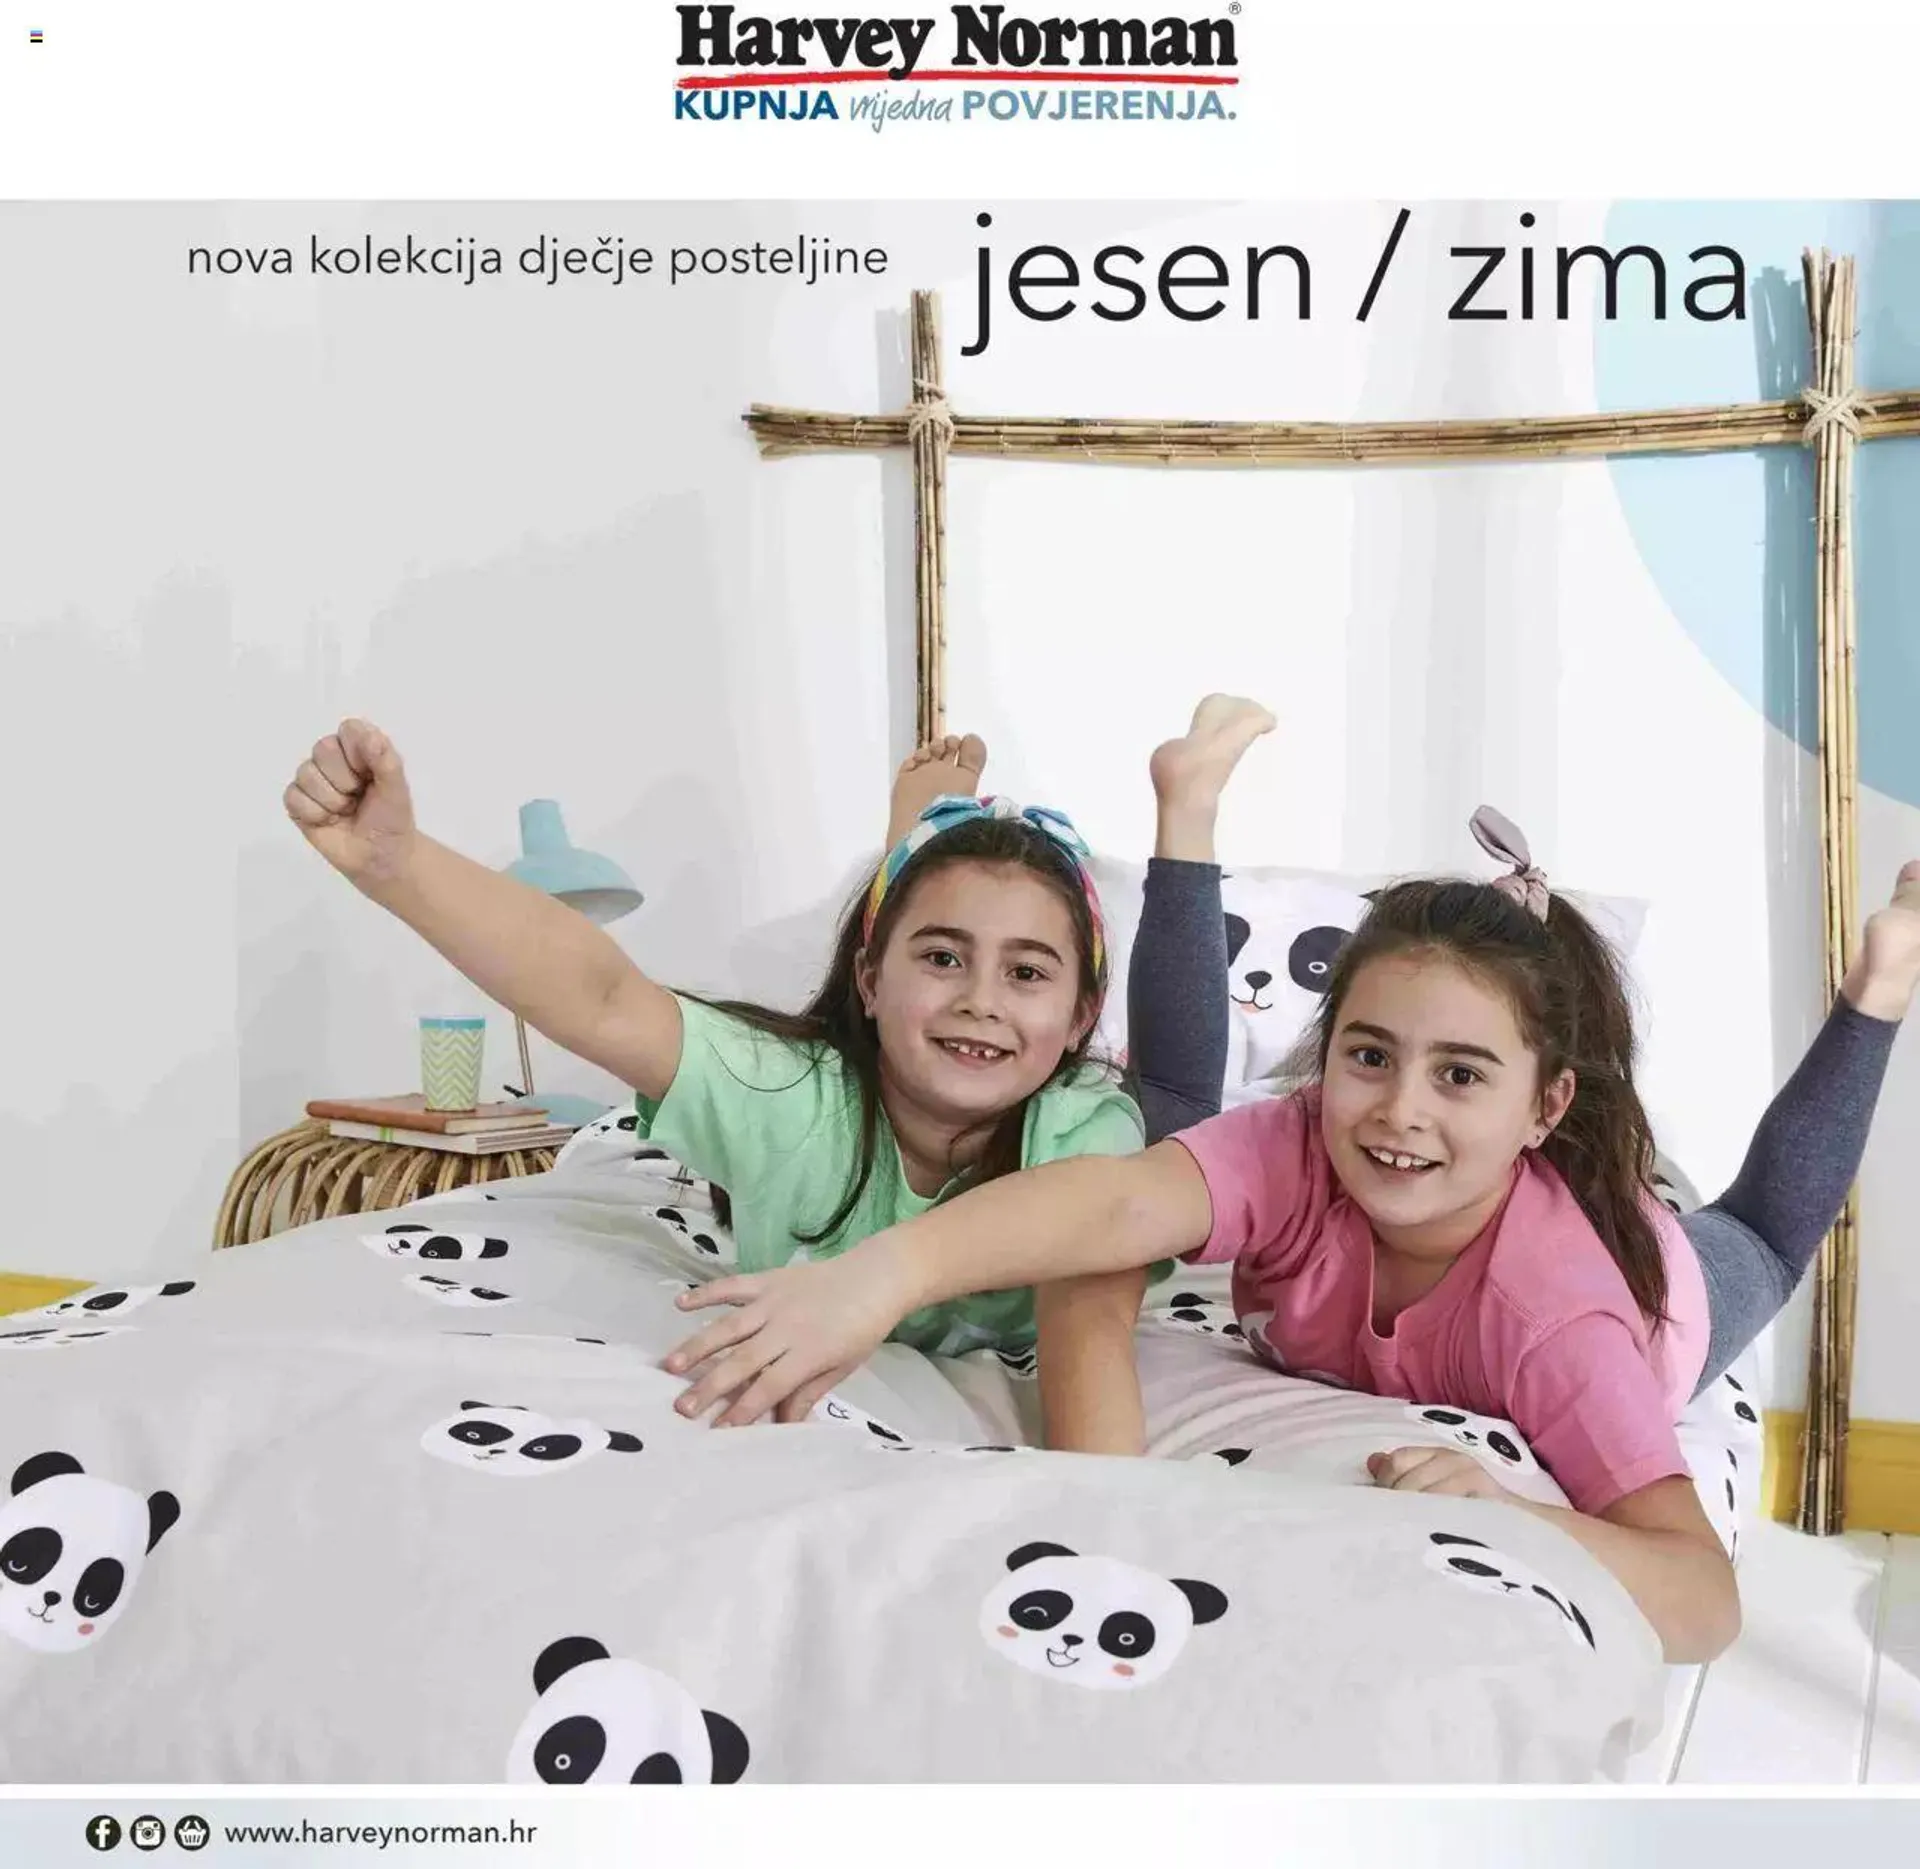 Harvey Norman - Nova kolekcija dječje posteljine - 0